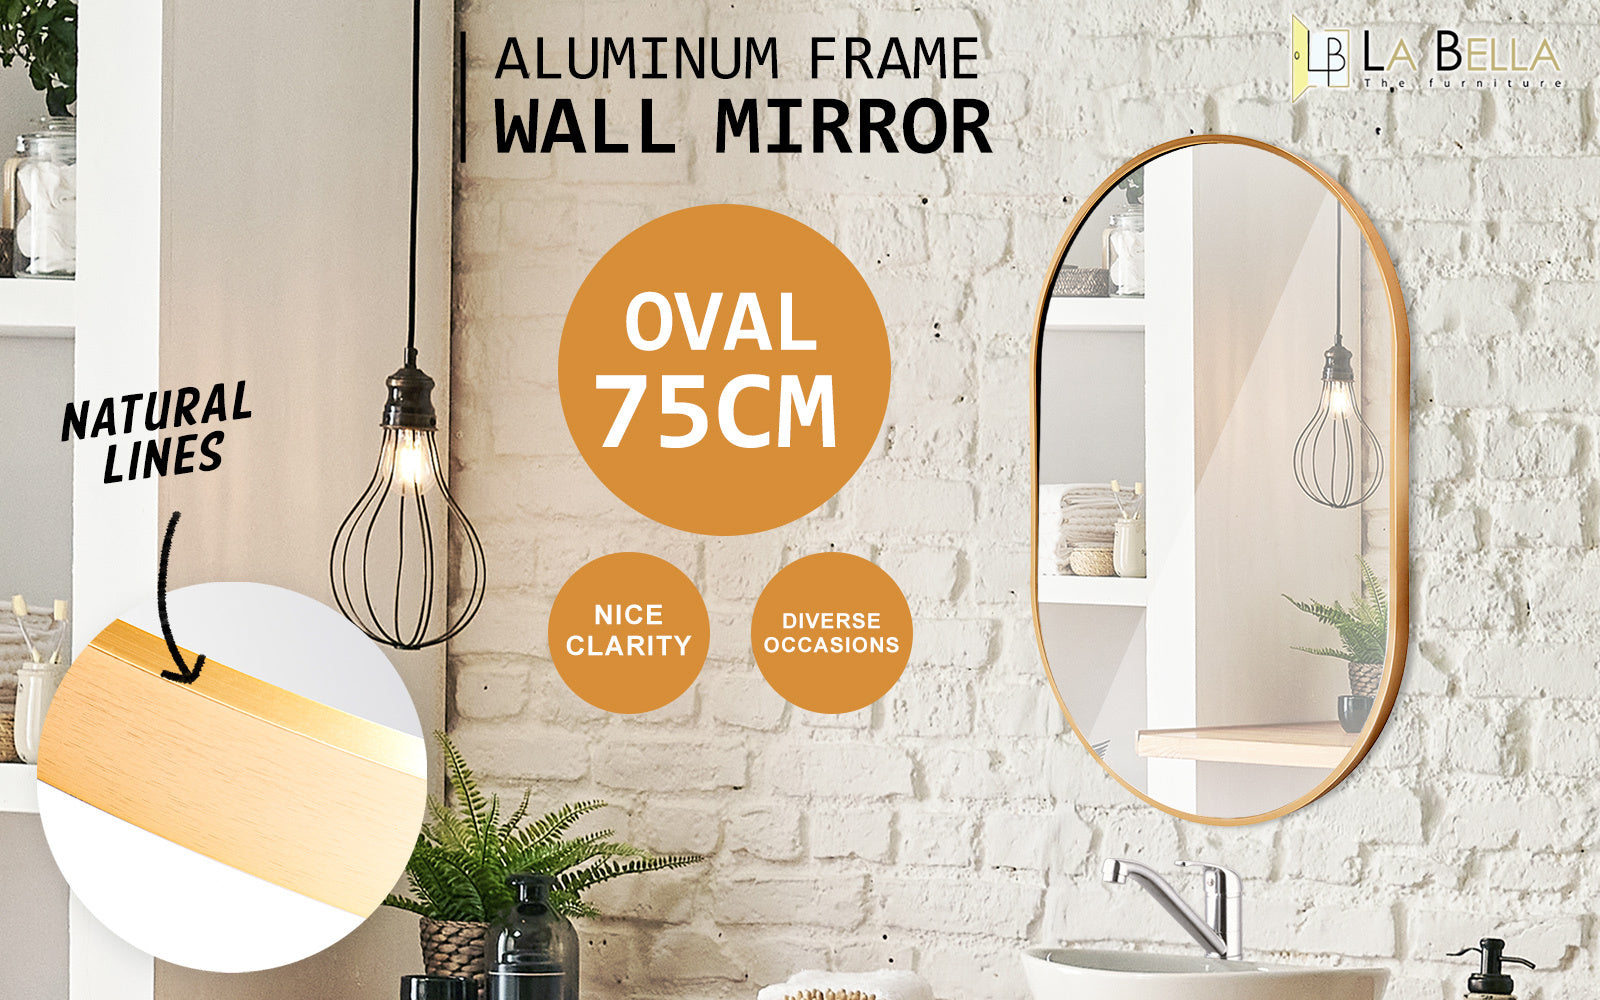 La Bella Gold Wall Mirror Oval Aluminum Frame Makeup Decor Bathroom Vanity 50x75cm